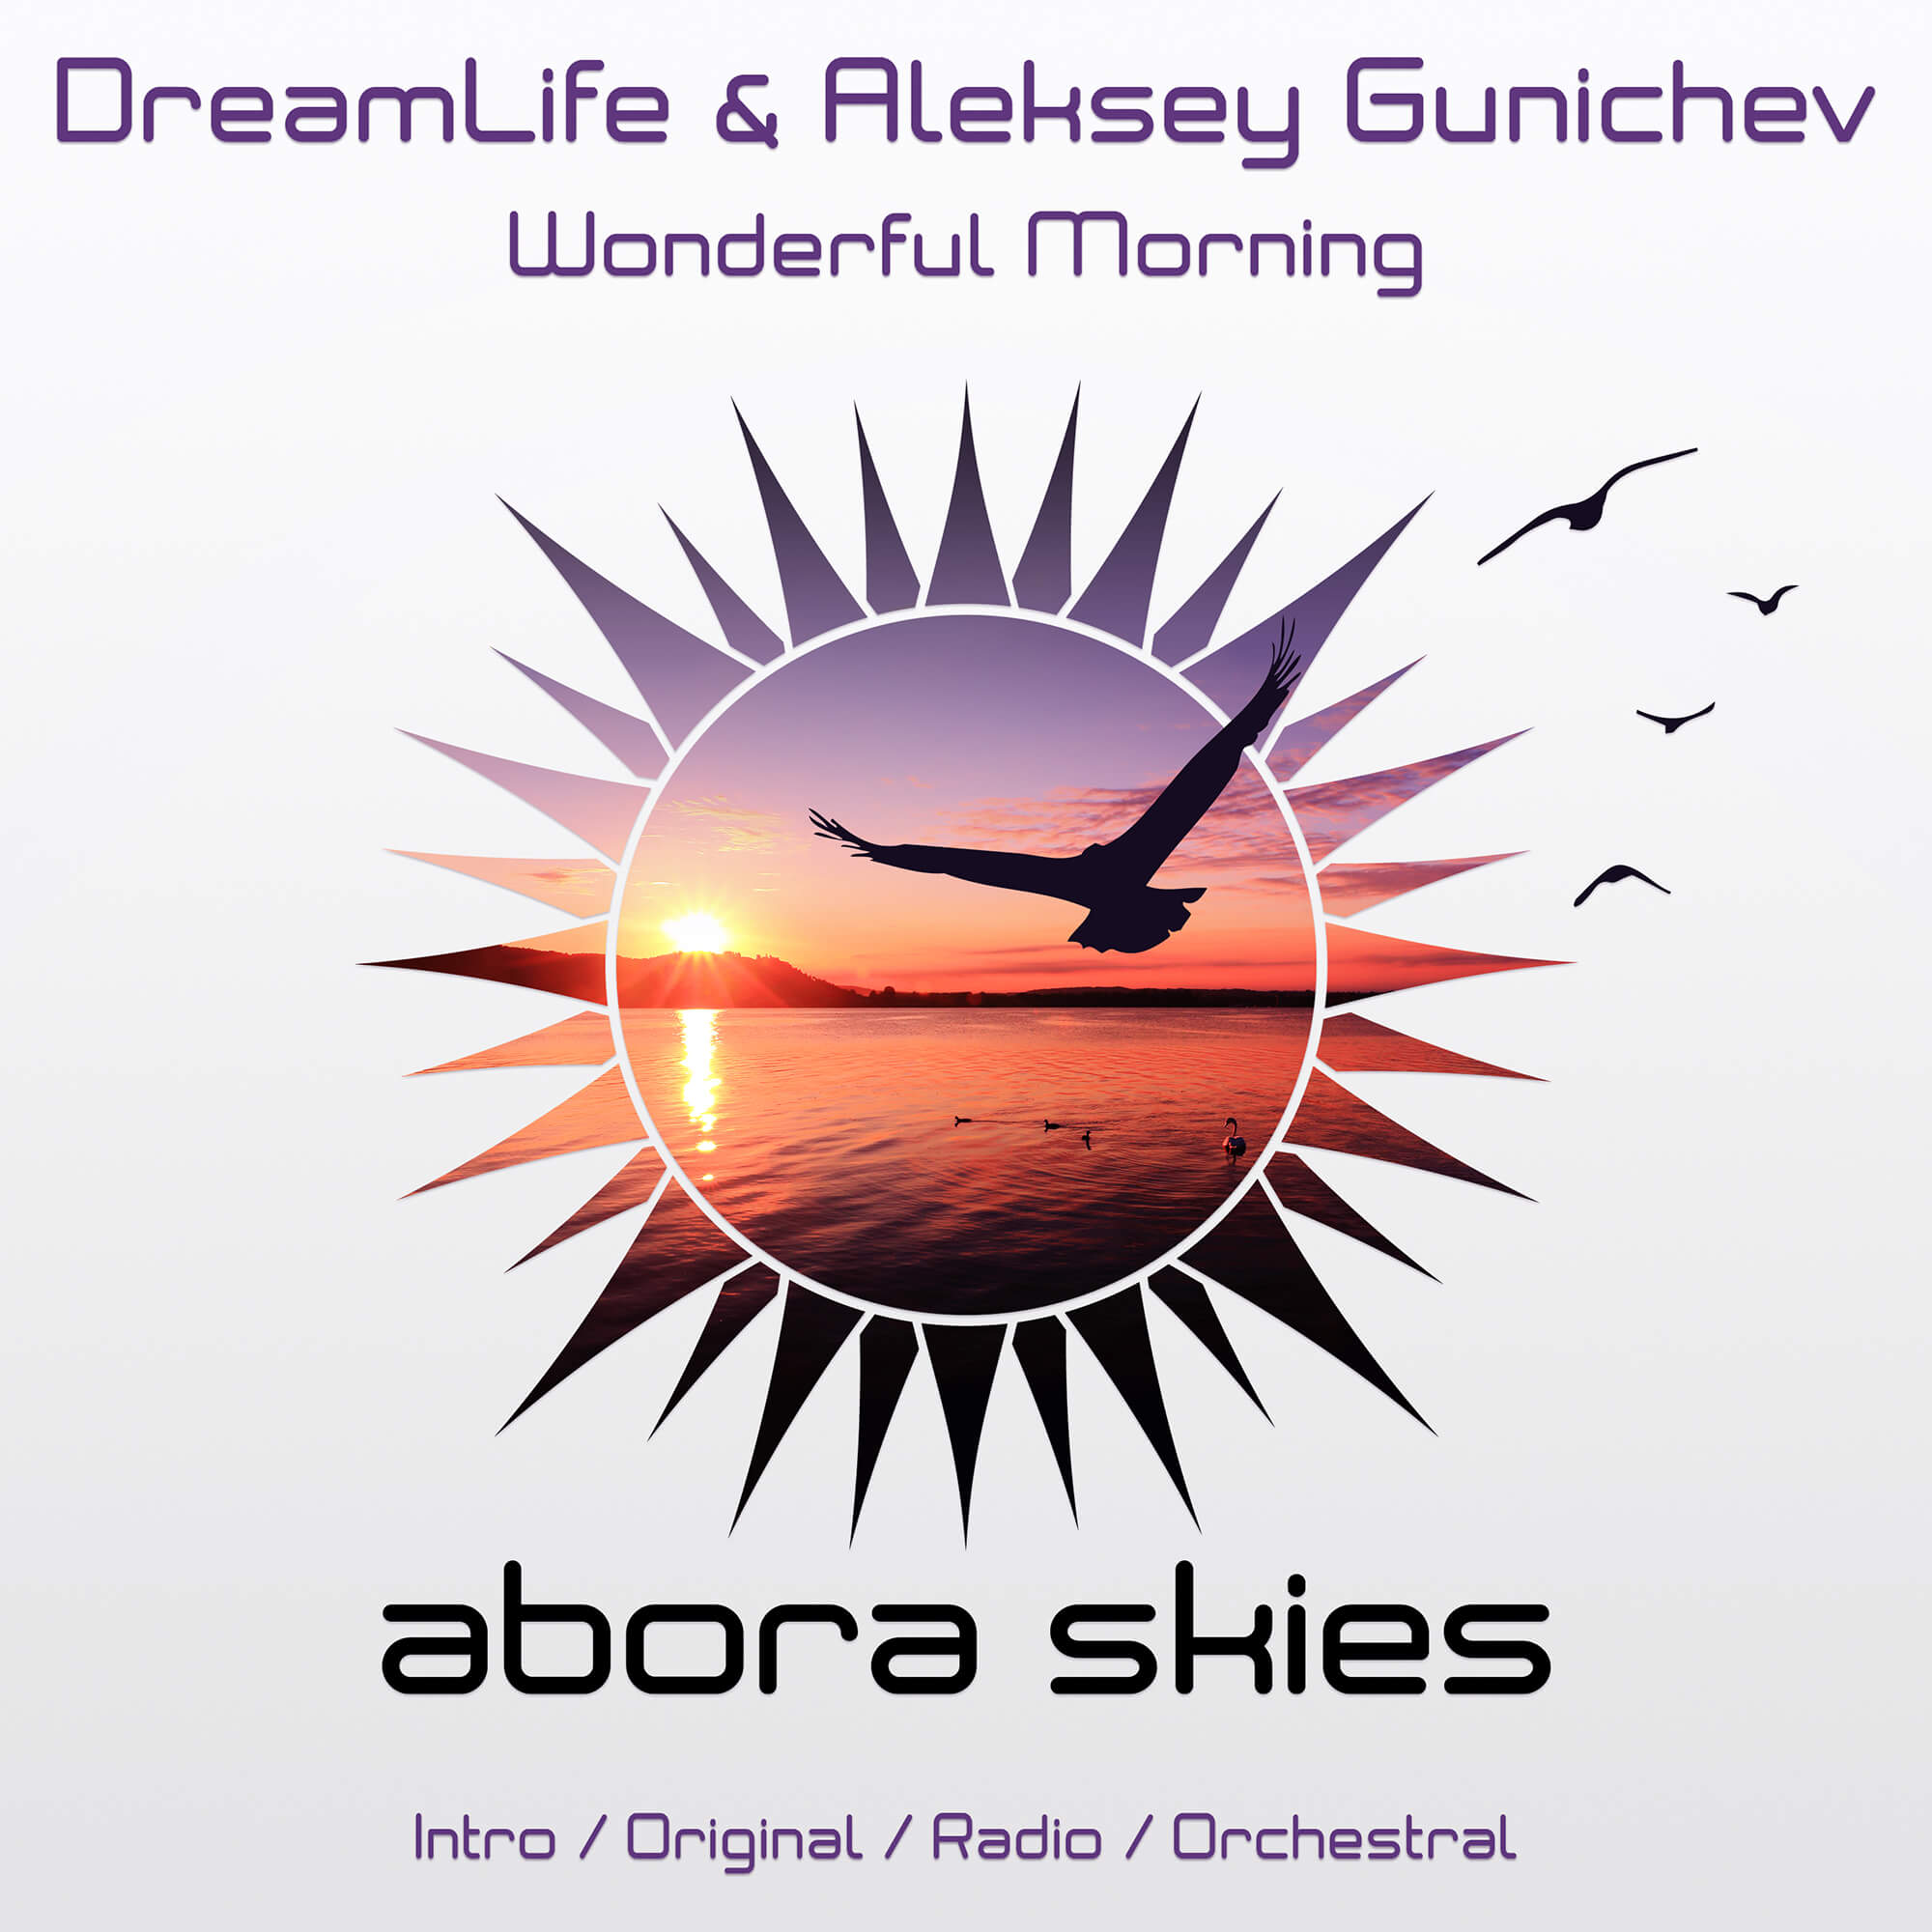 DreamLife & Aleksey Gunichev - Wonderful Morning